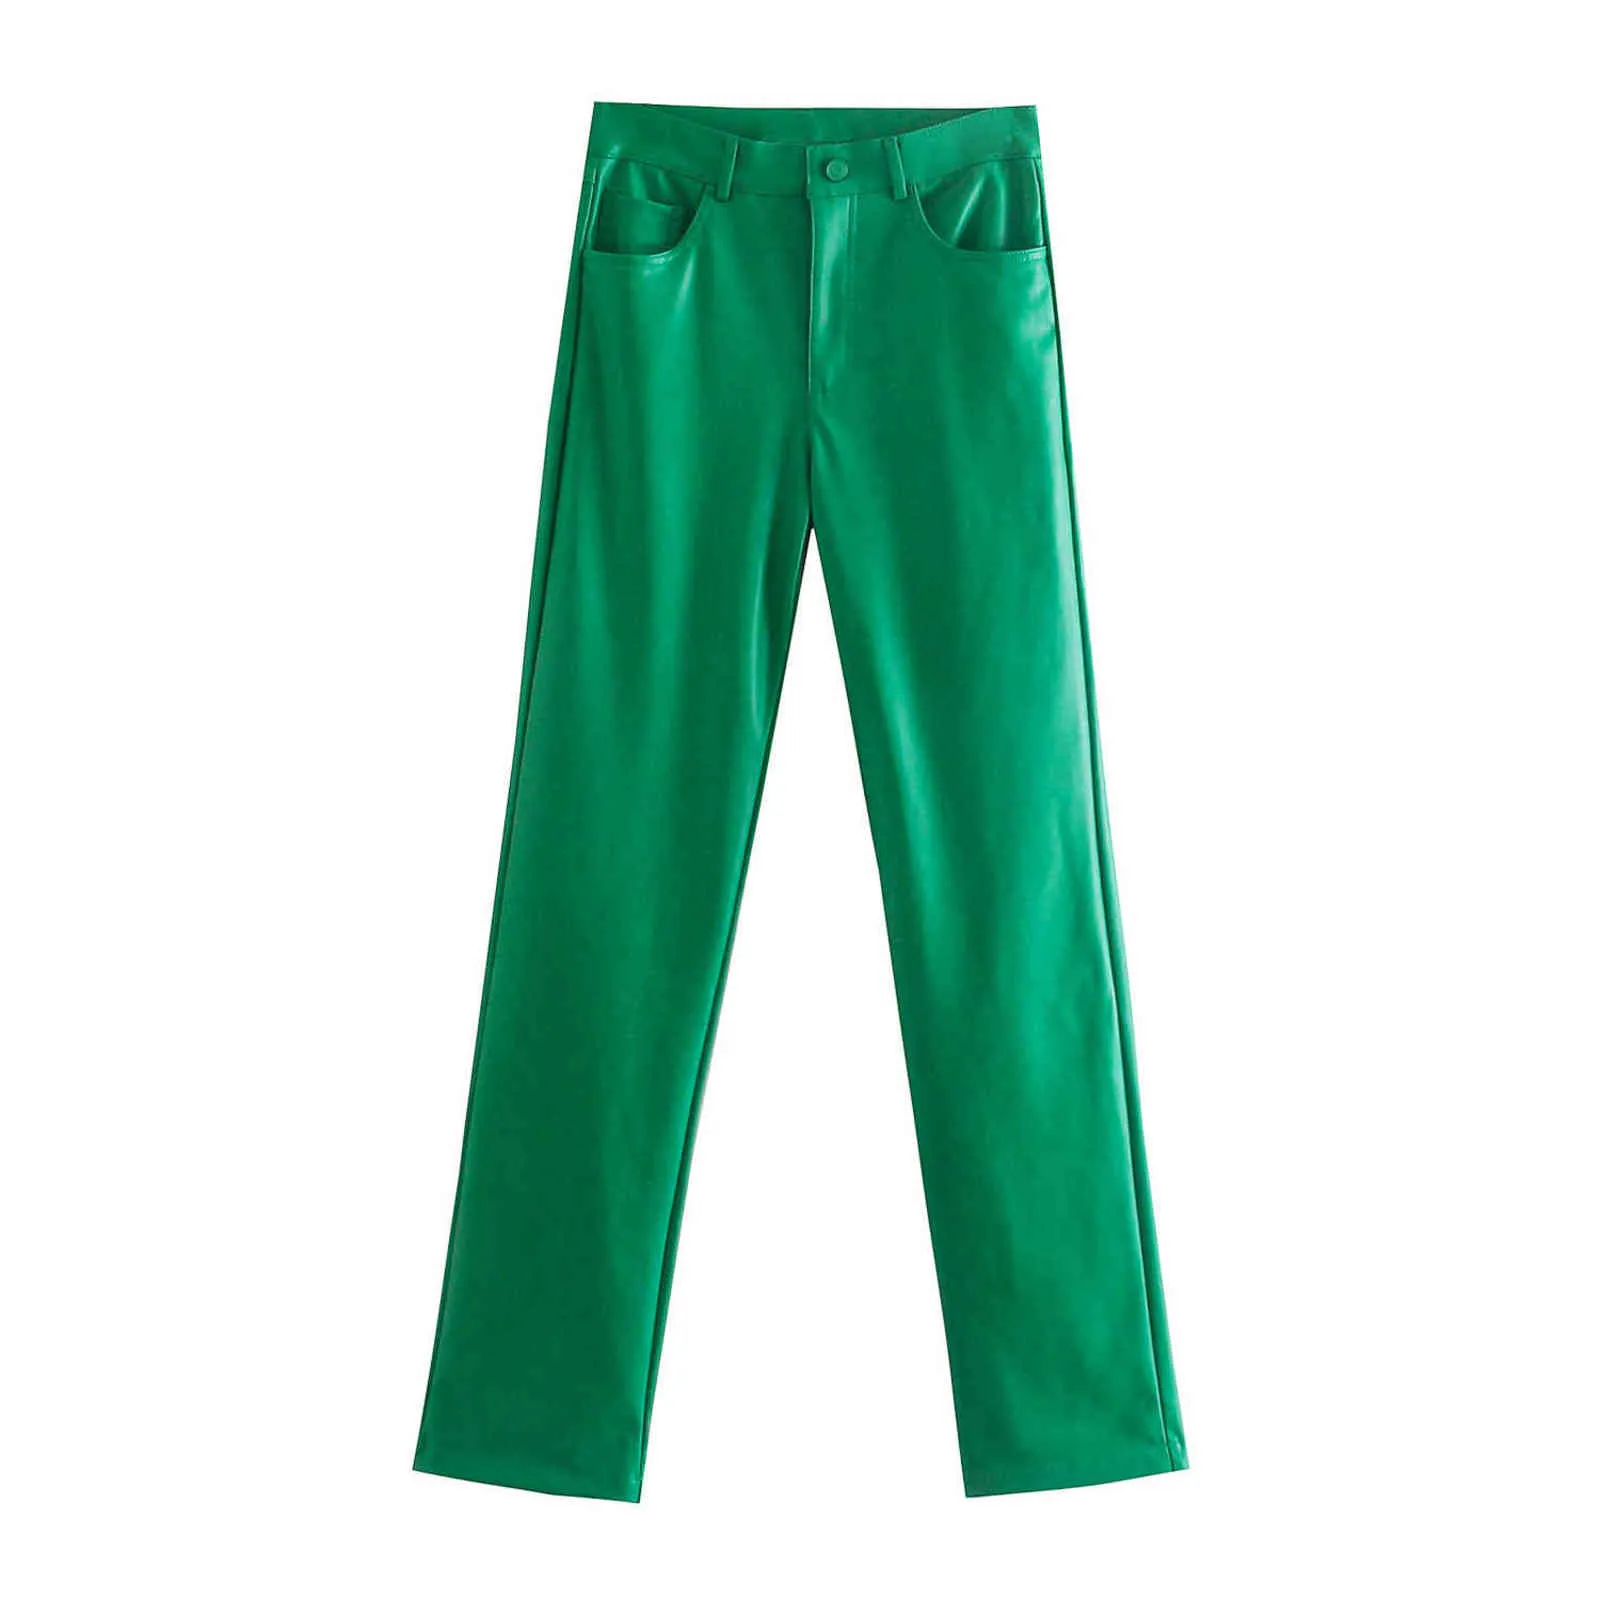 Kadınlar Yeşil PU Deri Pantolon Fermuar Kadın Sonbahar Kış Kalem Pantolon 211124